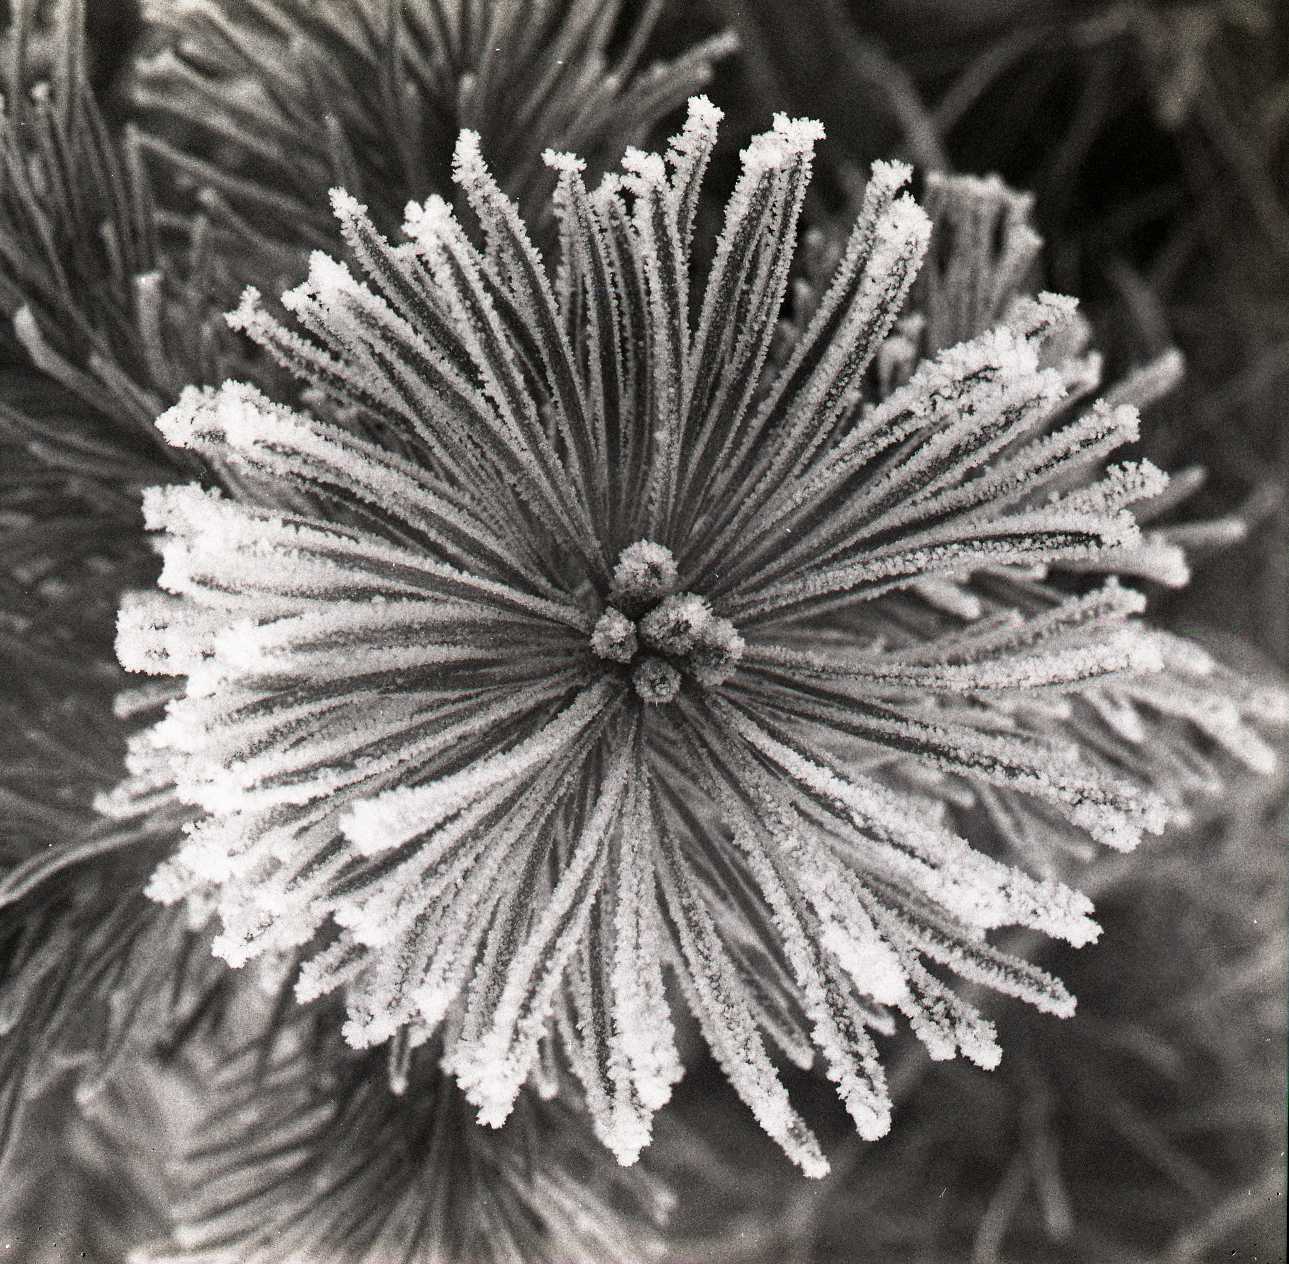 M 106 945: Tallplanta i rimfrost vid hagen, december 1960. Foto: Hilding Mickelsson©